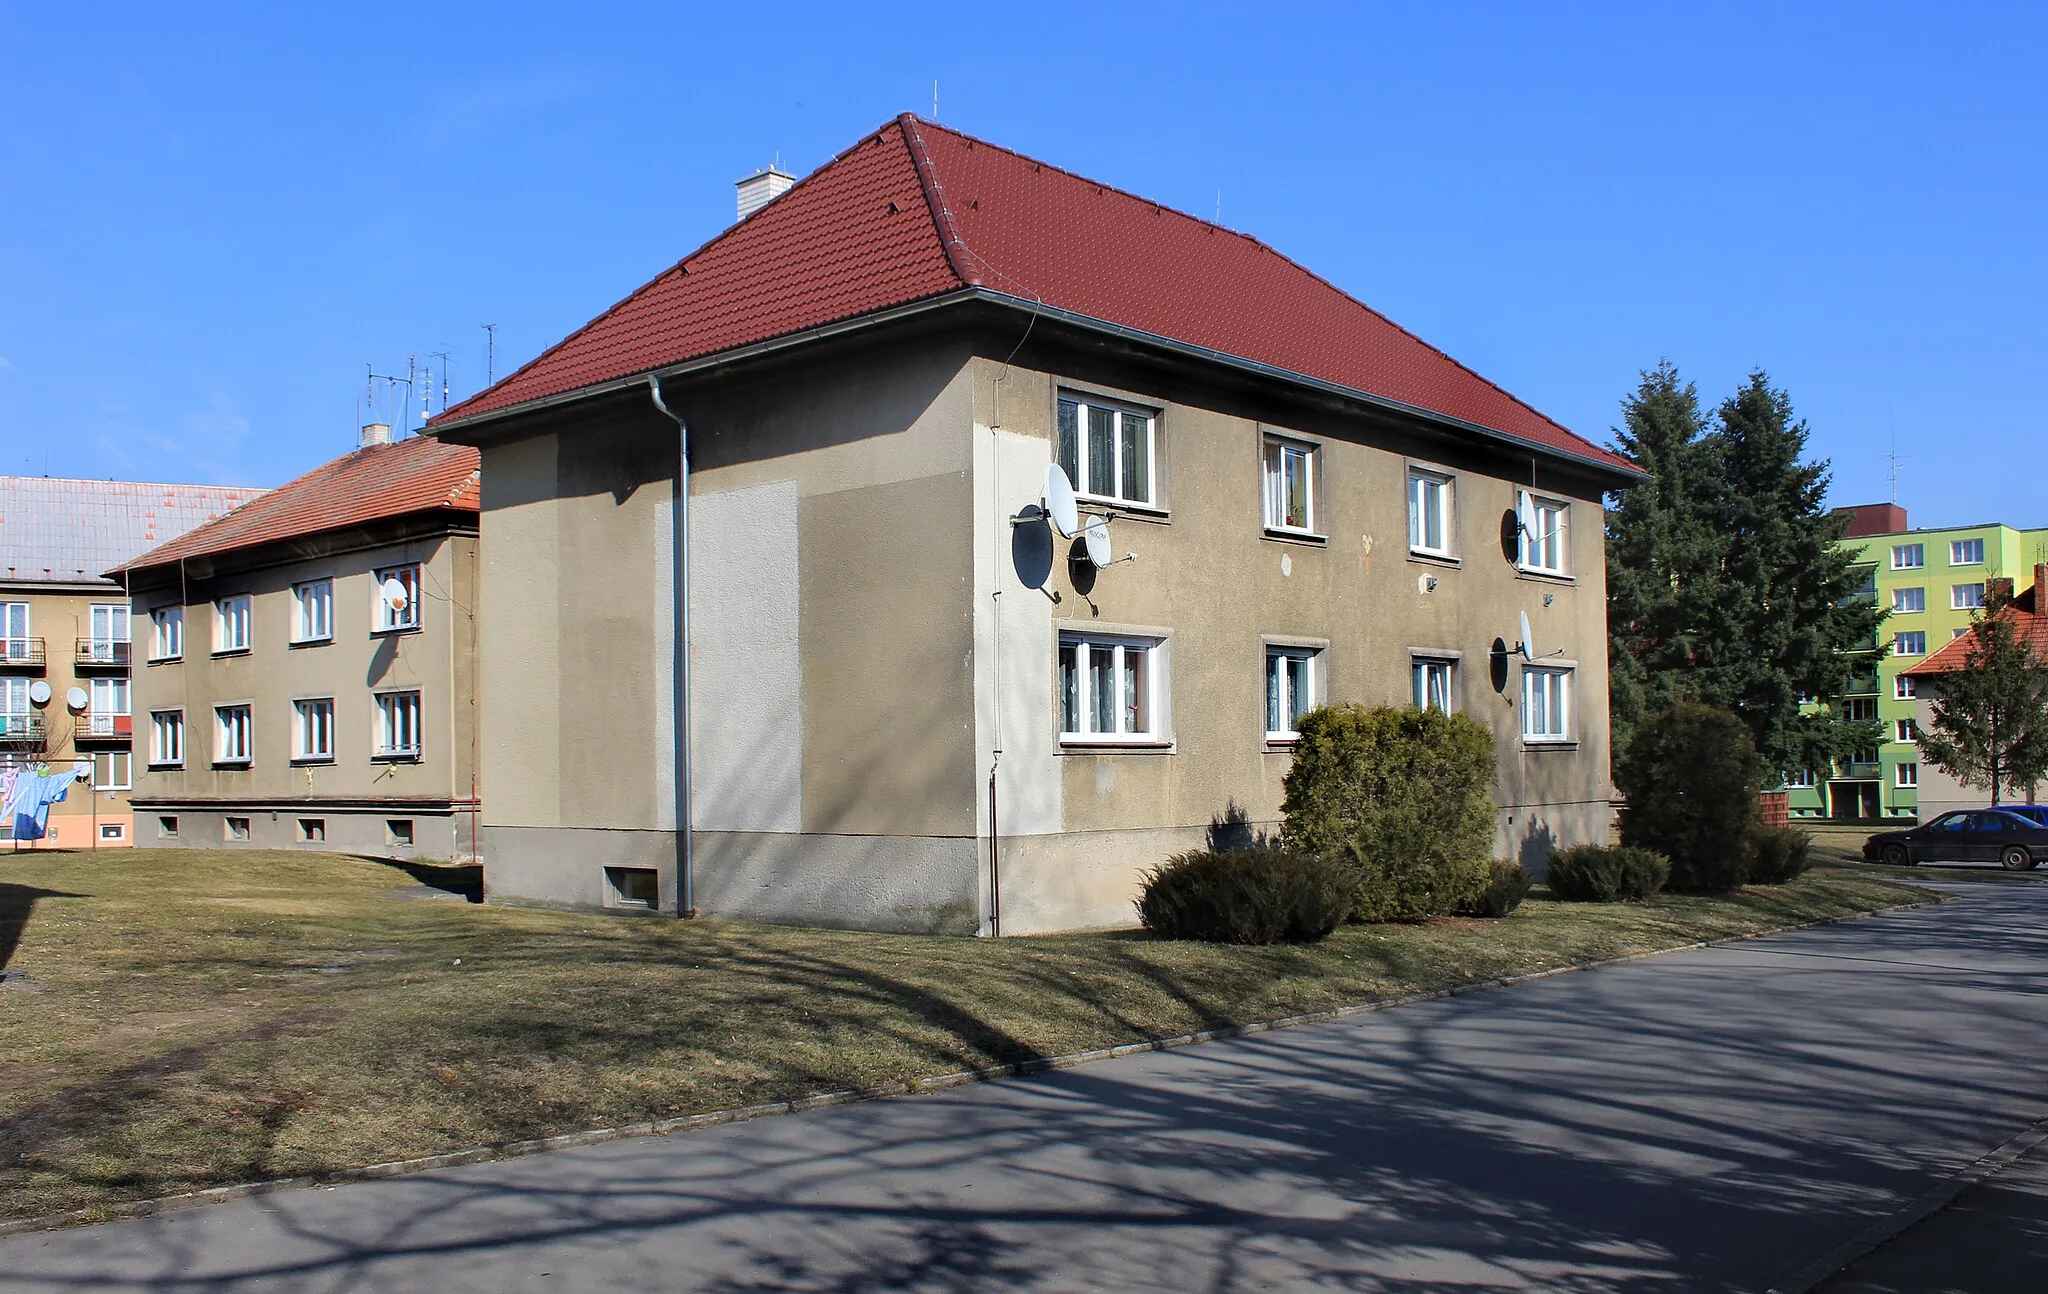 Photo showing: Housing estate in Heřmanova Huť, Czech Republic.